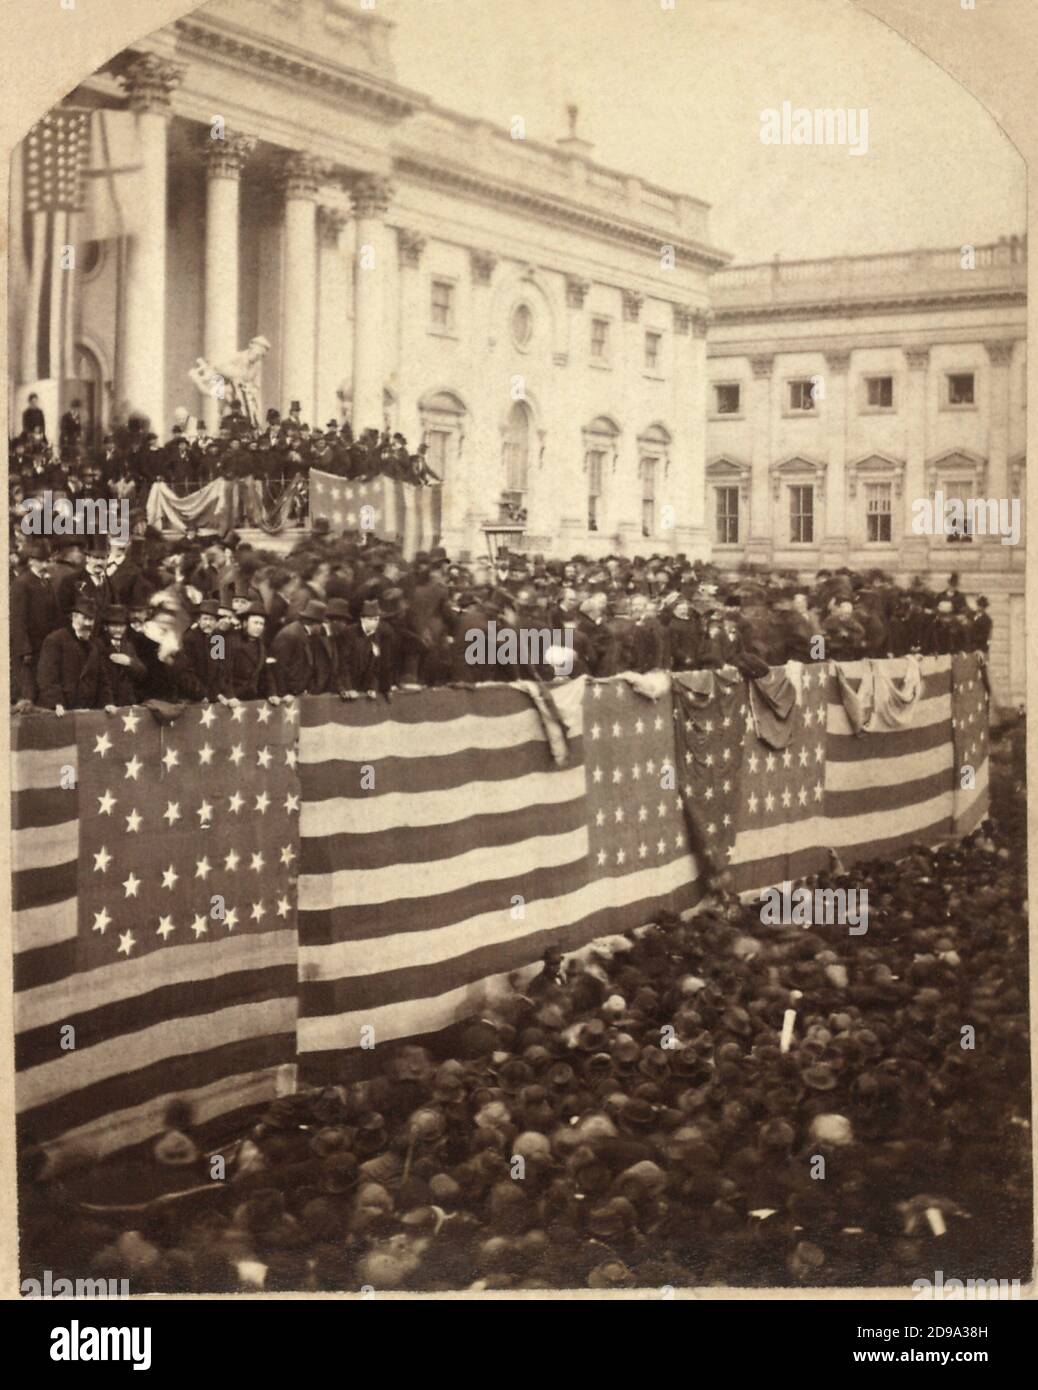 1877 , 11 luglio , WASHINGTON DC , USA : folla all'inaugurazione del presidente Rutherford B. Hayes ( 1822 - 1893 ). Capo Giustizia Morrison R. Waite amministra il giuramento di incarico a Rutherford B. Hayes su una bandiera-drapped stand inaugurale sul portico est del Campidoglio degli Stati Uniti . Photo by Brady's National Portrait Gallery, Washington, D.C. - STATI Uniti d'AMERICA - CAMPIDOGLIO - - GEOGRAFIA - GEOGRAFIA - FOTO STORICHE - STORIA - STORIA - ARCHITETTURA - ARCHITETTURA - ARTI - ARTE - BANDIERA AMERICANA - separazione del Presidente americano -- -- archi Foto Stock